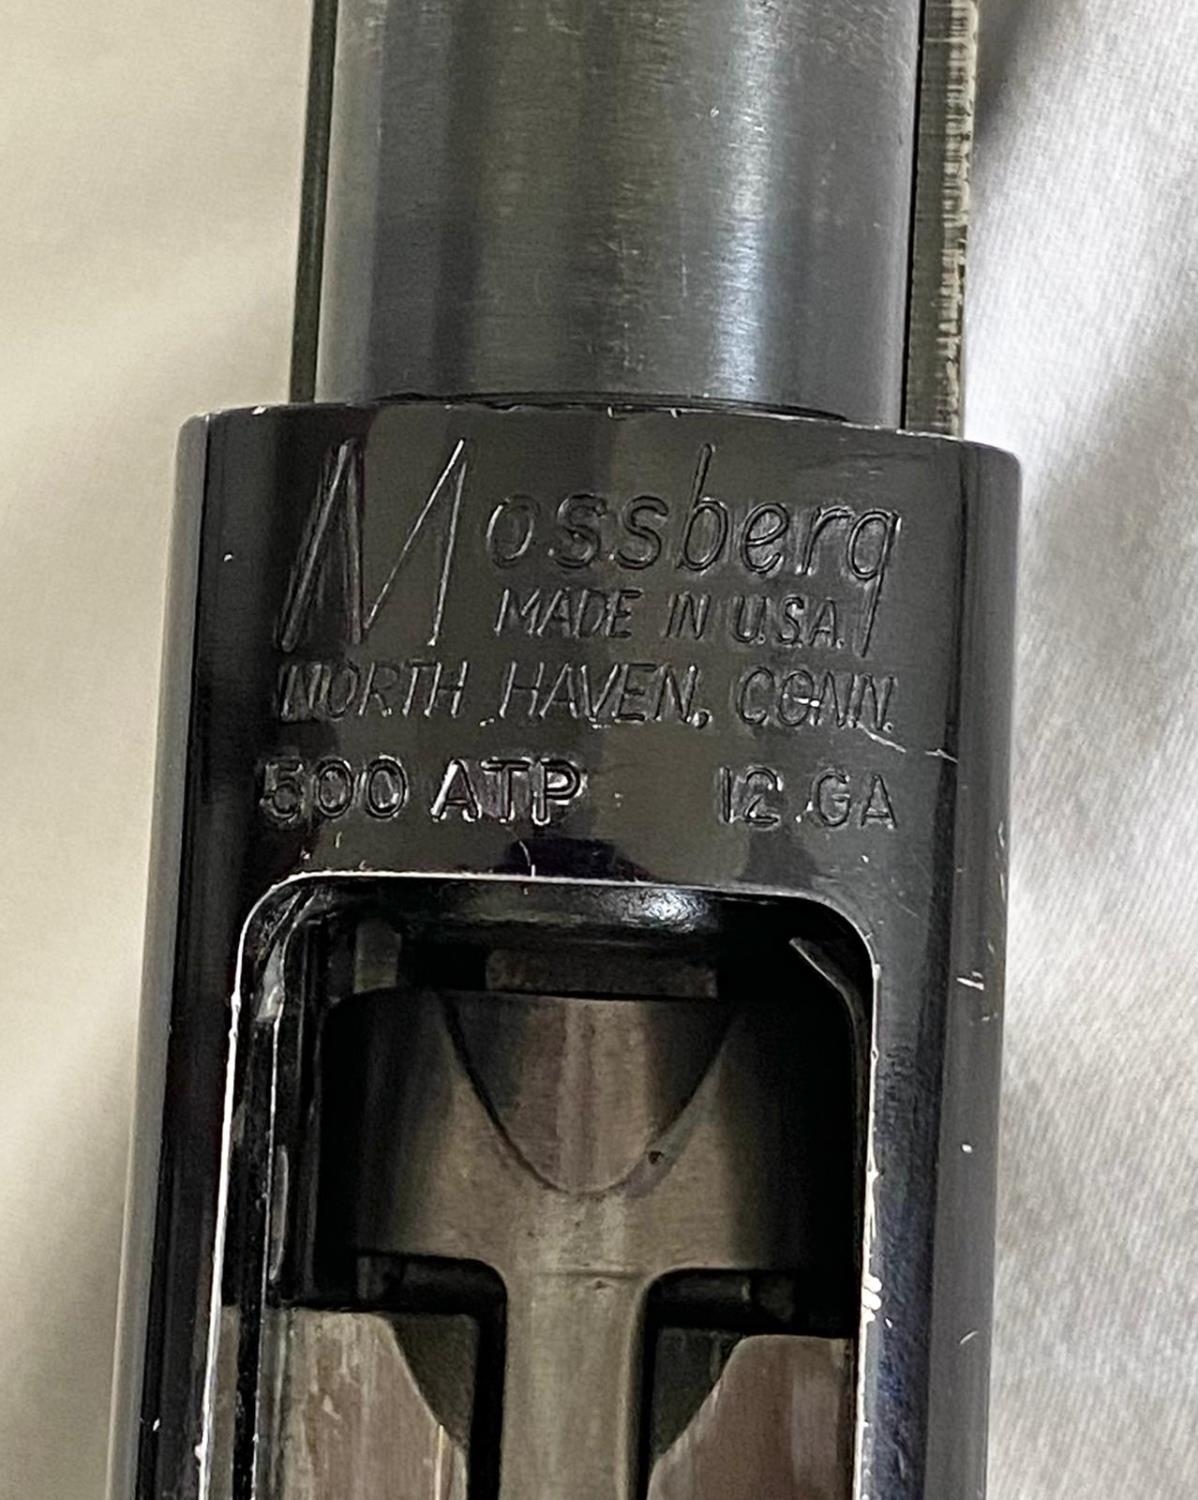 A Mossberg Model 500ATP 12 Gauge Pump Action Shotgun. Extended safety. Good clean barrel. 4 x - Image 6 of 6